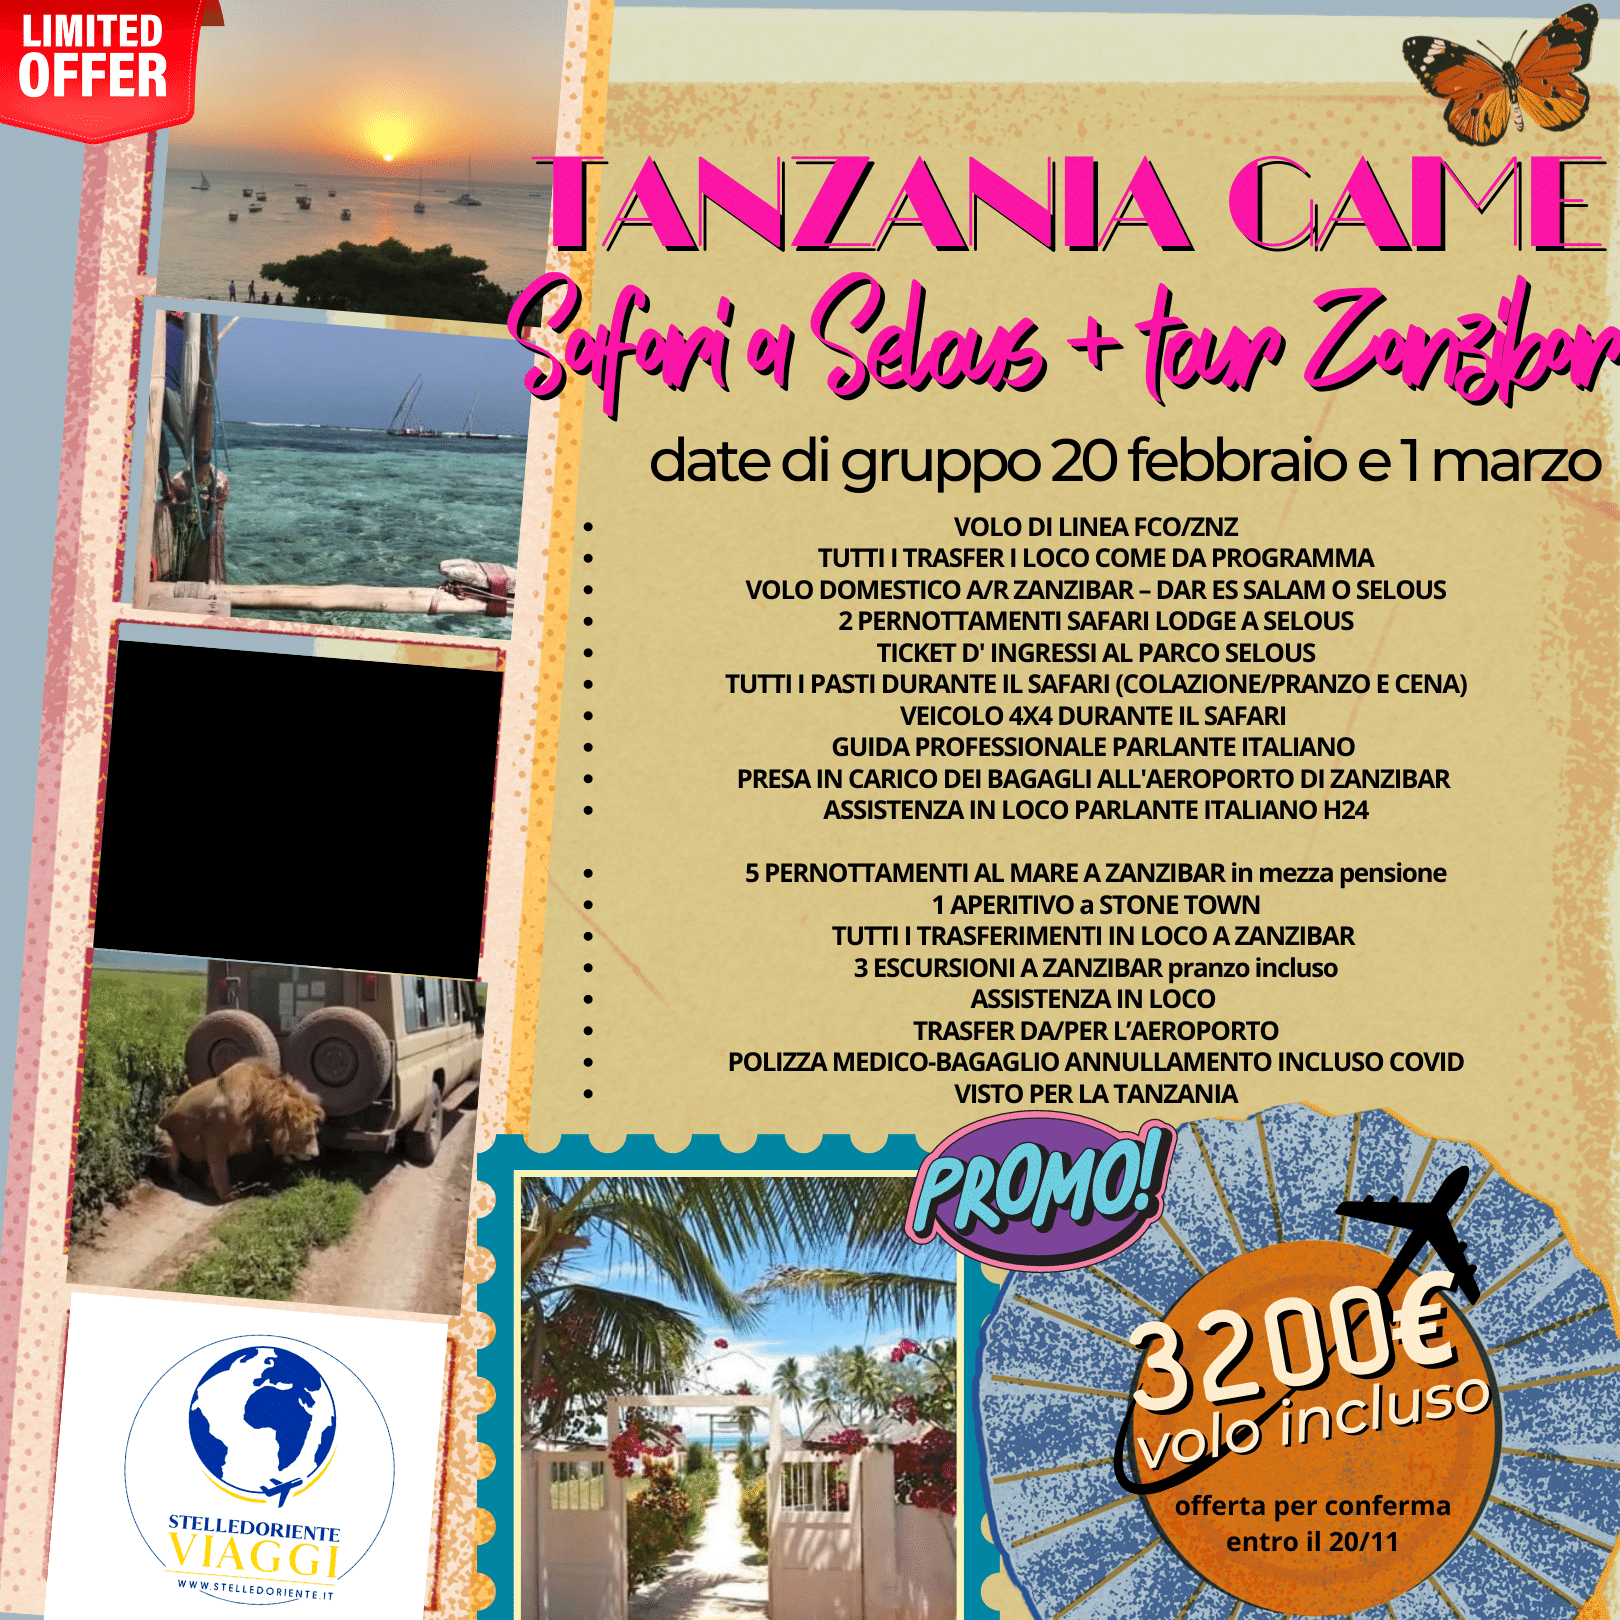 TANZANIA GAME- esclusivo tour Safari + Zanzibar Tour ...alla scoperta della vera Tanzania